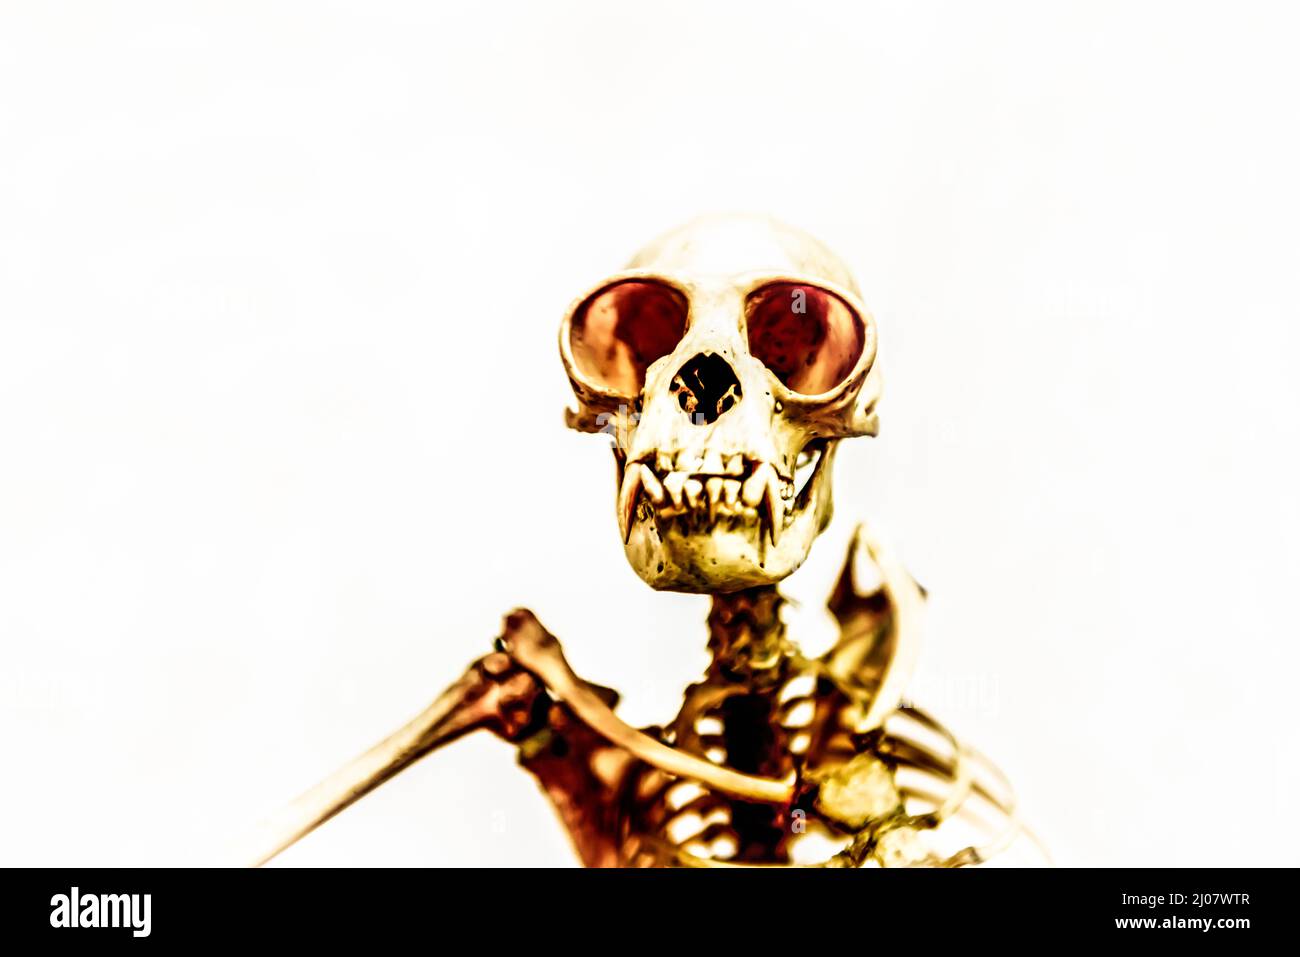 Skelett eines Orang-Utans. *** Lokale Bildunterschrift *** Orang-Utan, Simia satyrus, Schädel, Kopfschuss, Vorderansicht, ein Tier, Tier, Skelett, Tierthemen, Kreativität Stockfoto